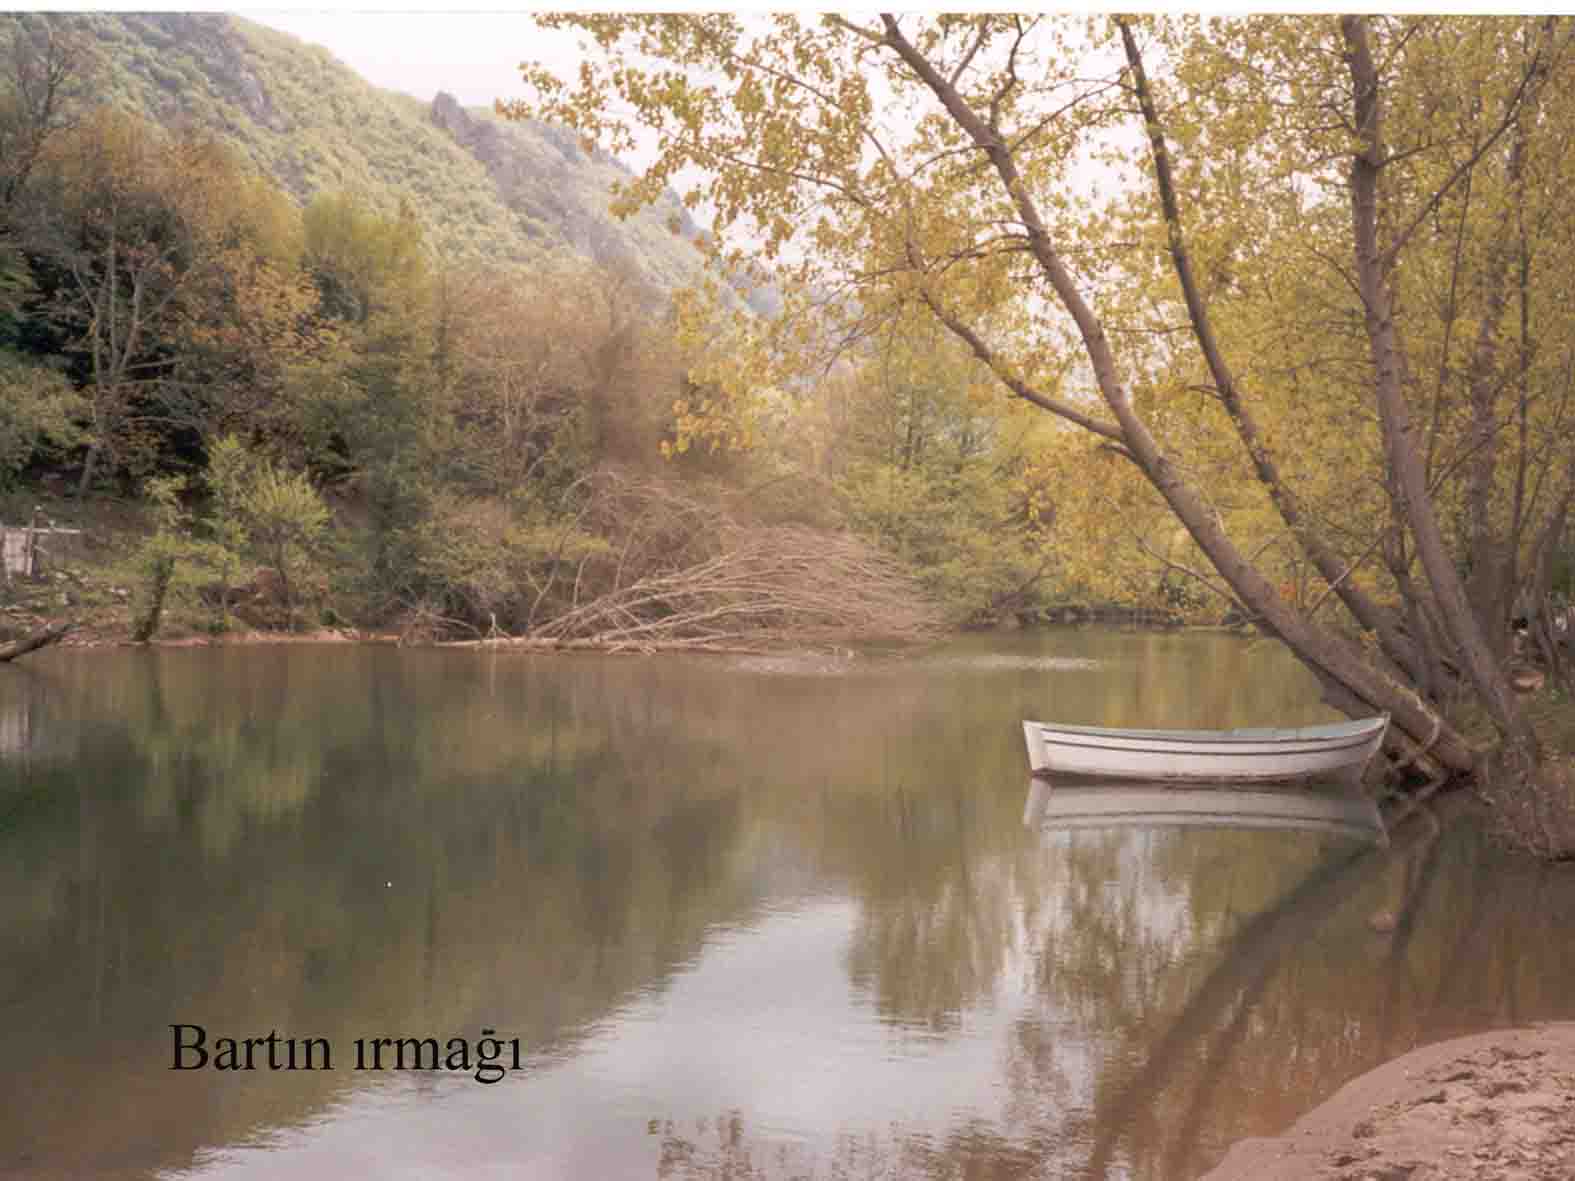 bartin river 1575 x 1181